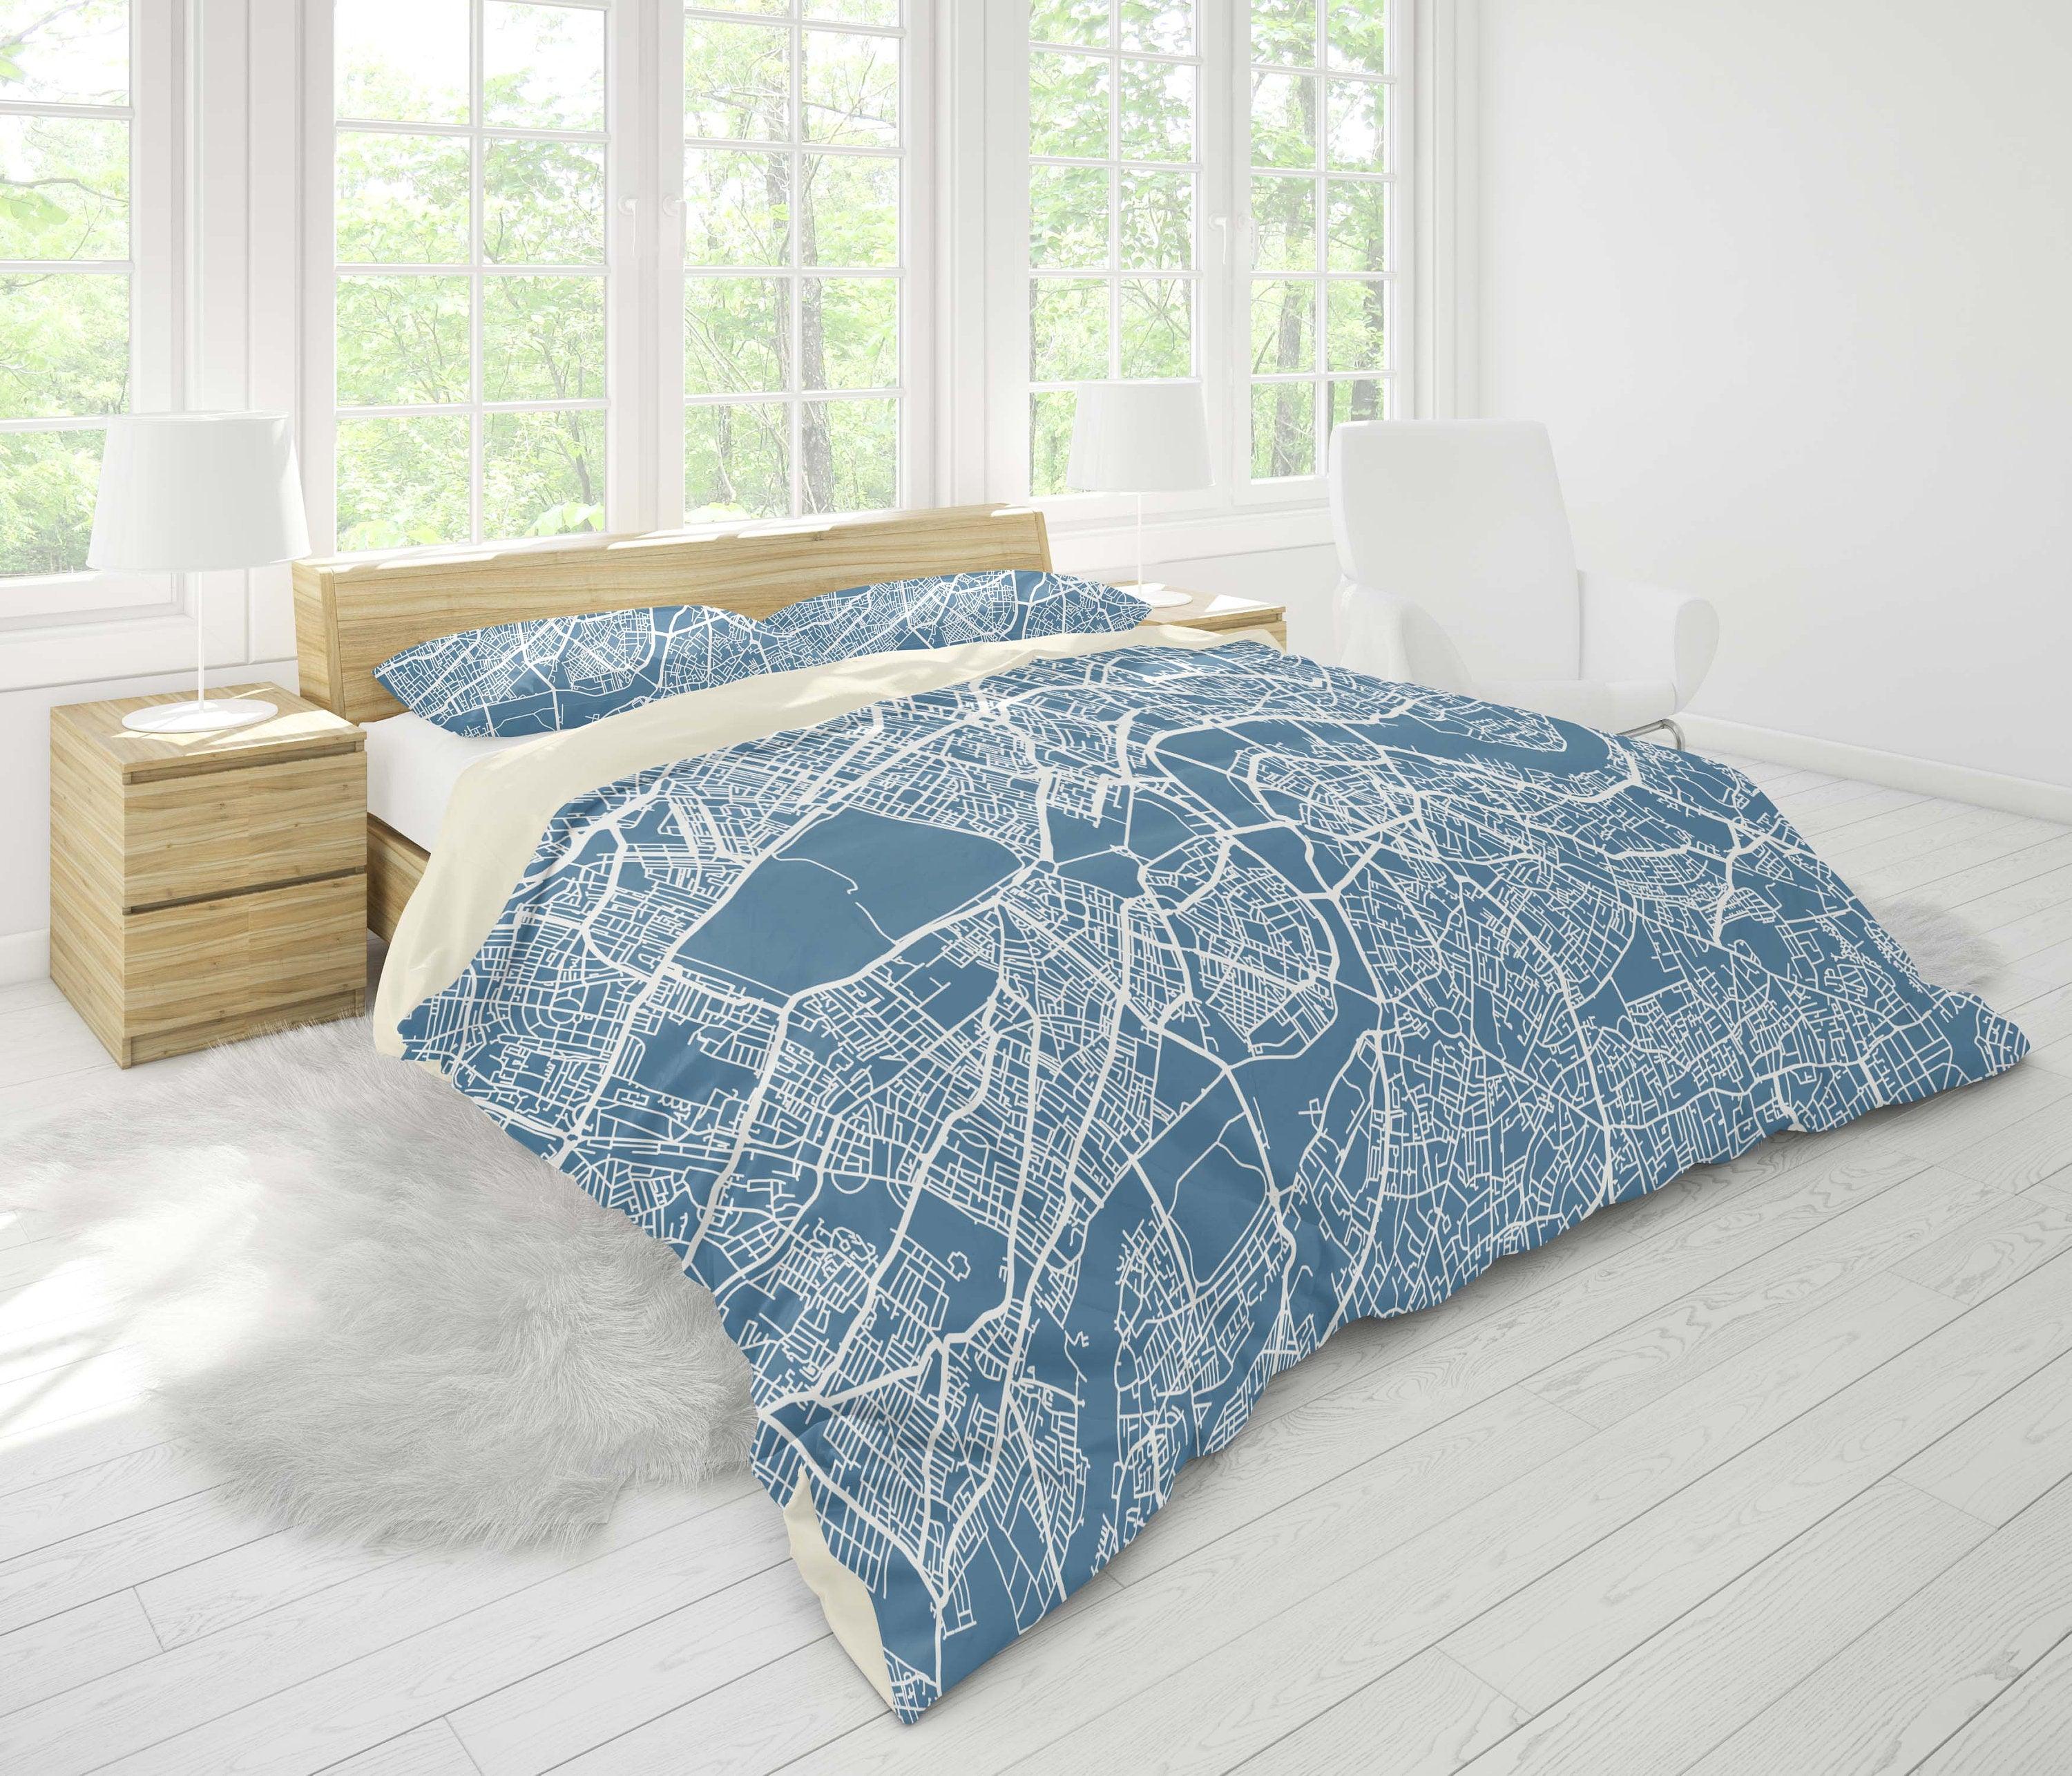 3D Blue-tones, City texture Bedding Set Quilt Cover Quilt Duvet Cover ,Pillowcases Personalized  Bedding,Queen, King ,Full, Double 3 Pcs- Jess Art Decoration